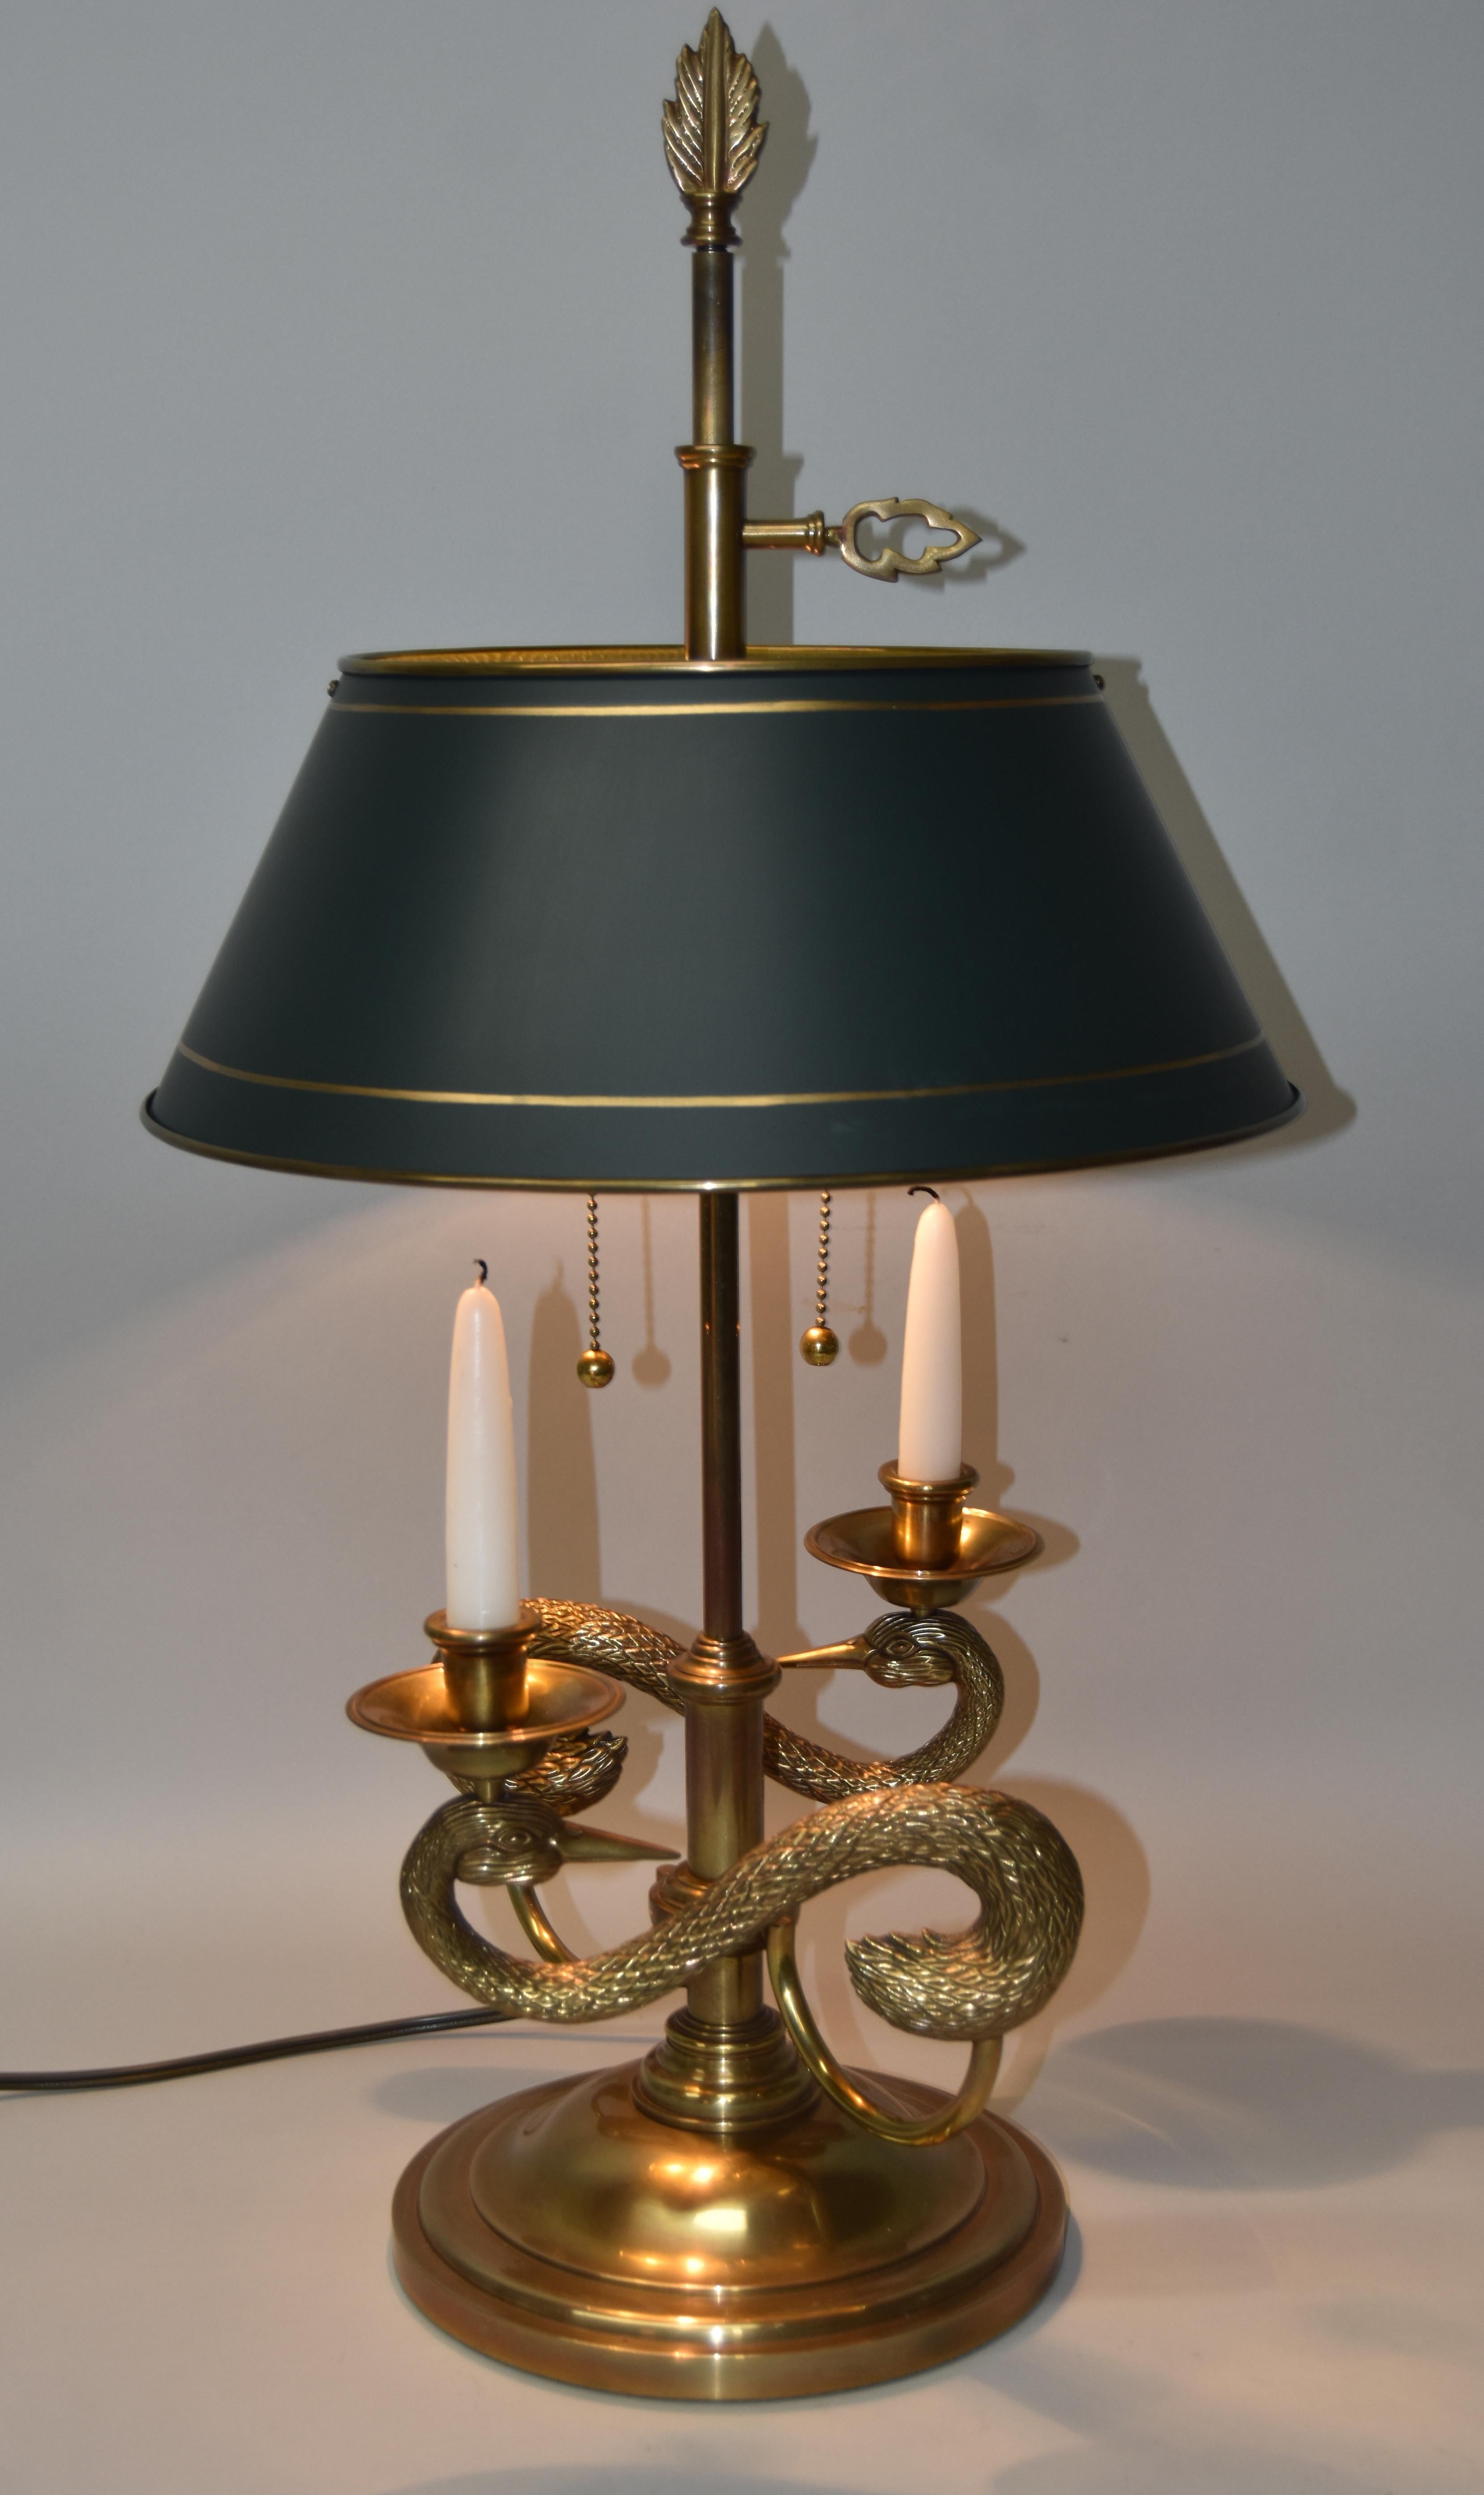 Chapman Tischlampe aus massivem Messing mit zwei Armen und Schwanenmotiv und ein Paar Kerzenhalter. Handgemalte goldene Borte auf dunkelgrünem Messing-Tole-Schirm. Der Farbton kann eingestellt werden. Zwei Steckdosen haben Kugelzüge. Wird mit einem